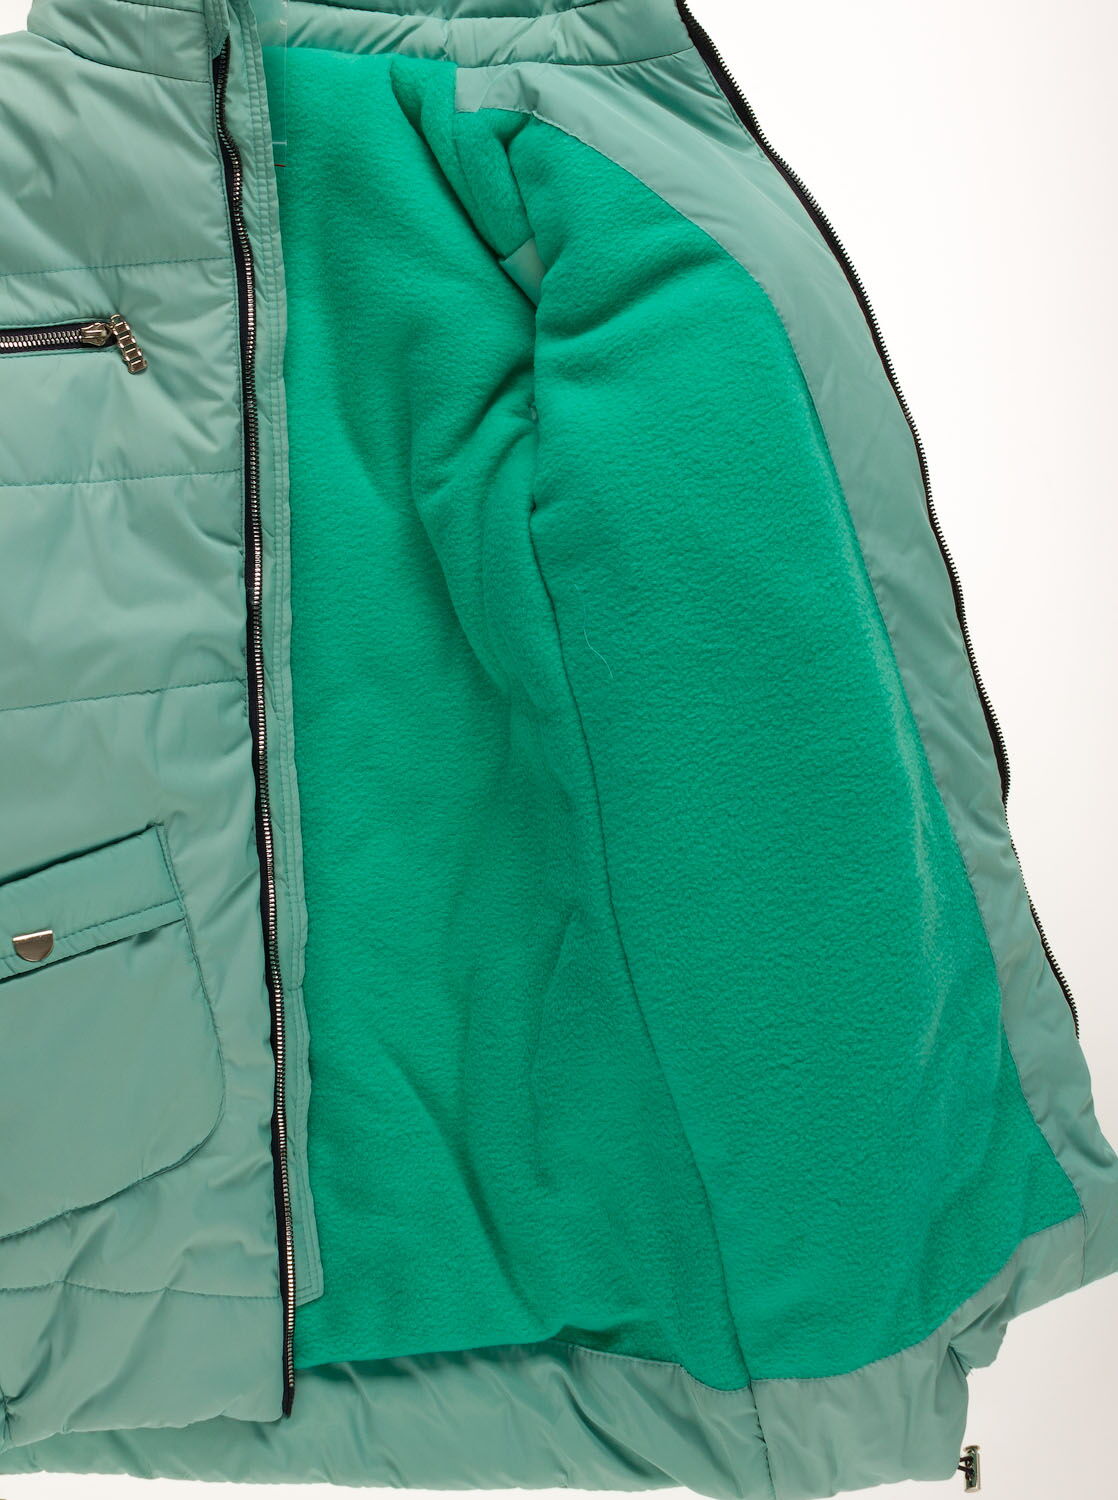 Куртка удлиненная зимняя для девочки Одягайко мята 20009О - фотография